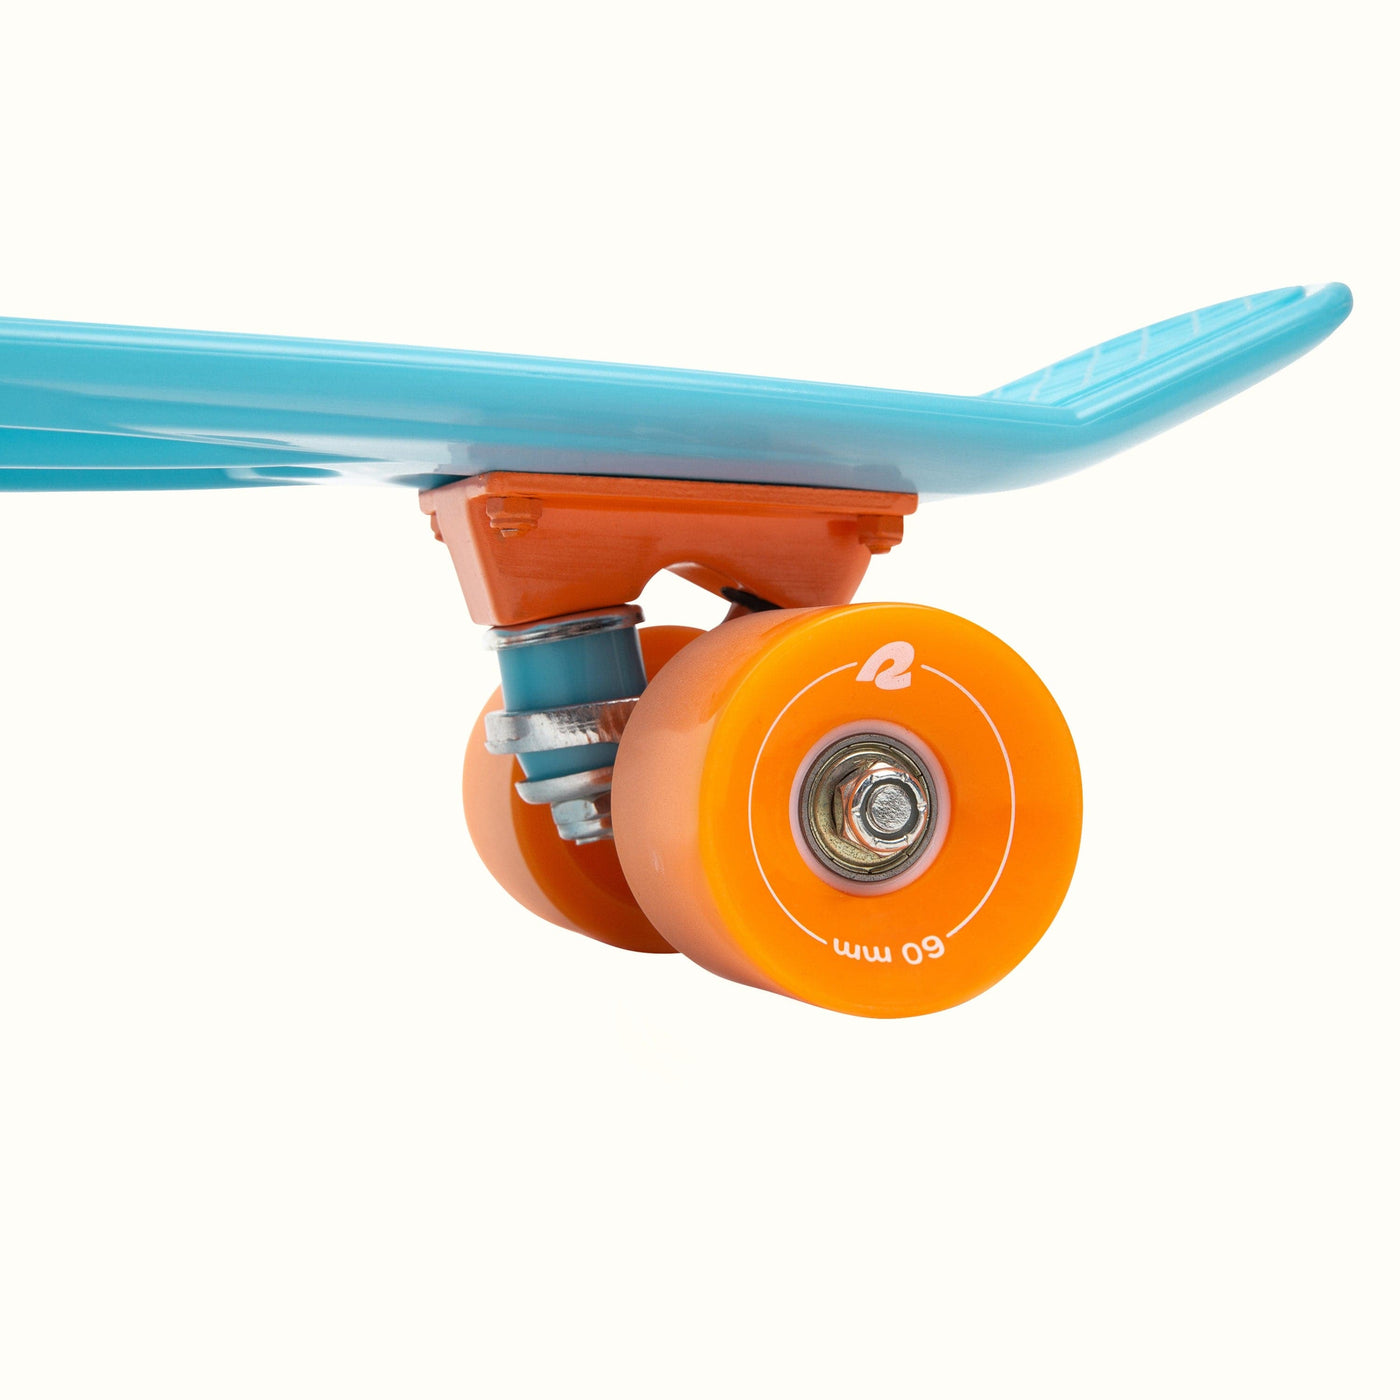 Quip Mini Cruiser Skateboard | Sky Blue 22.5"